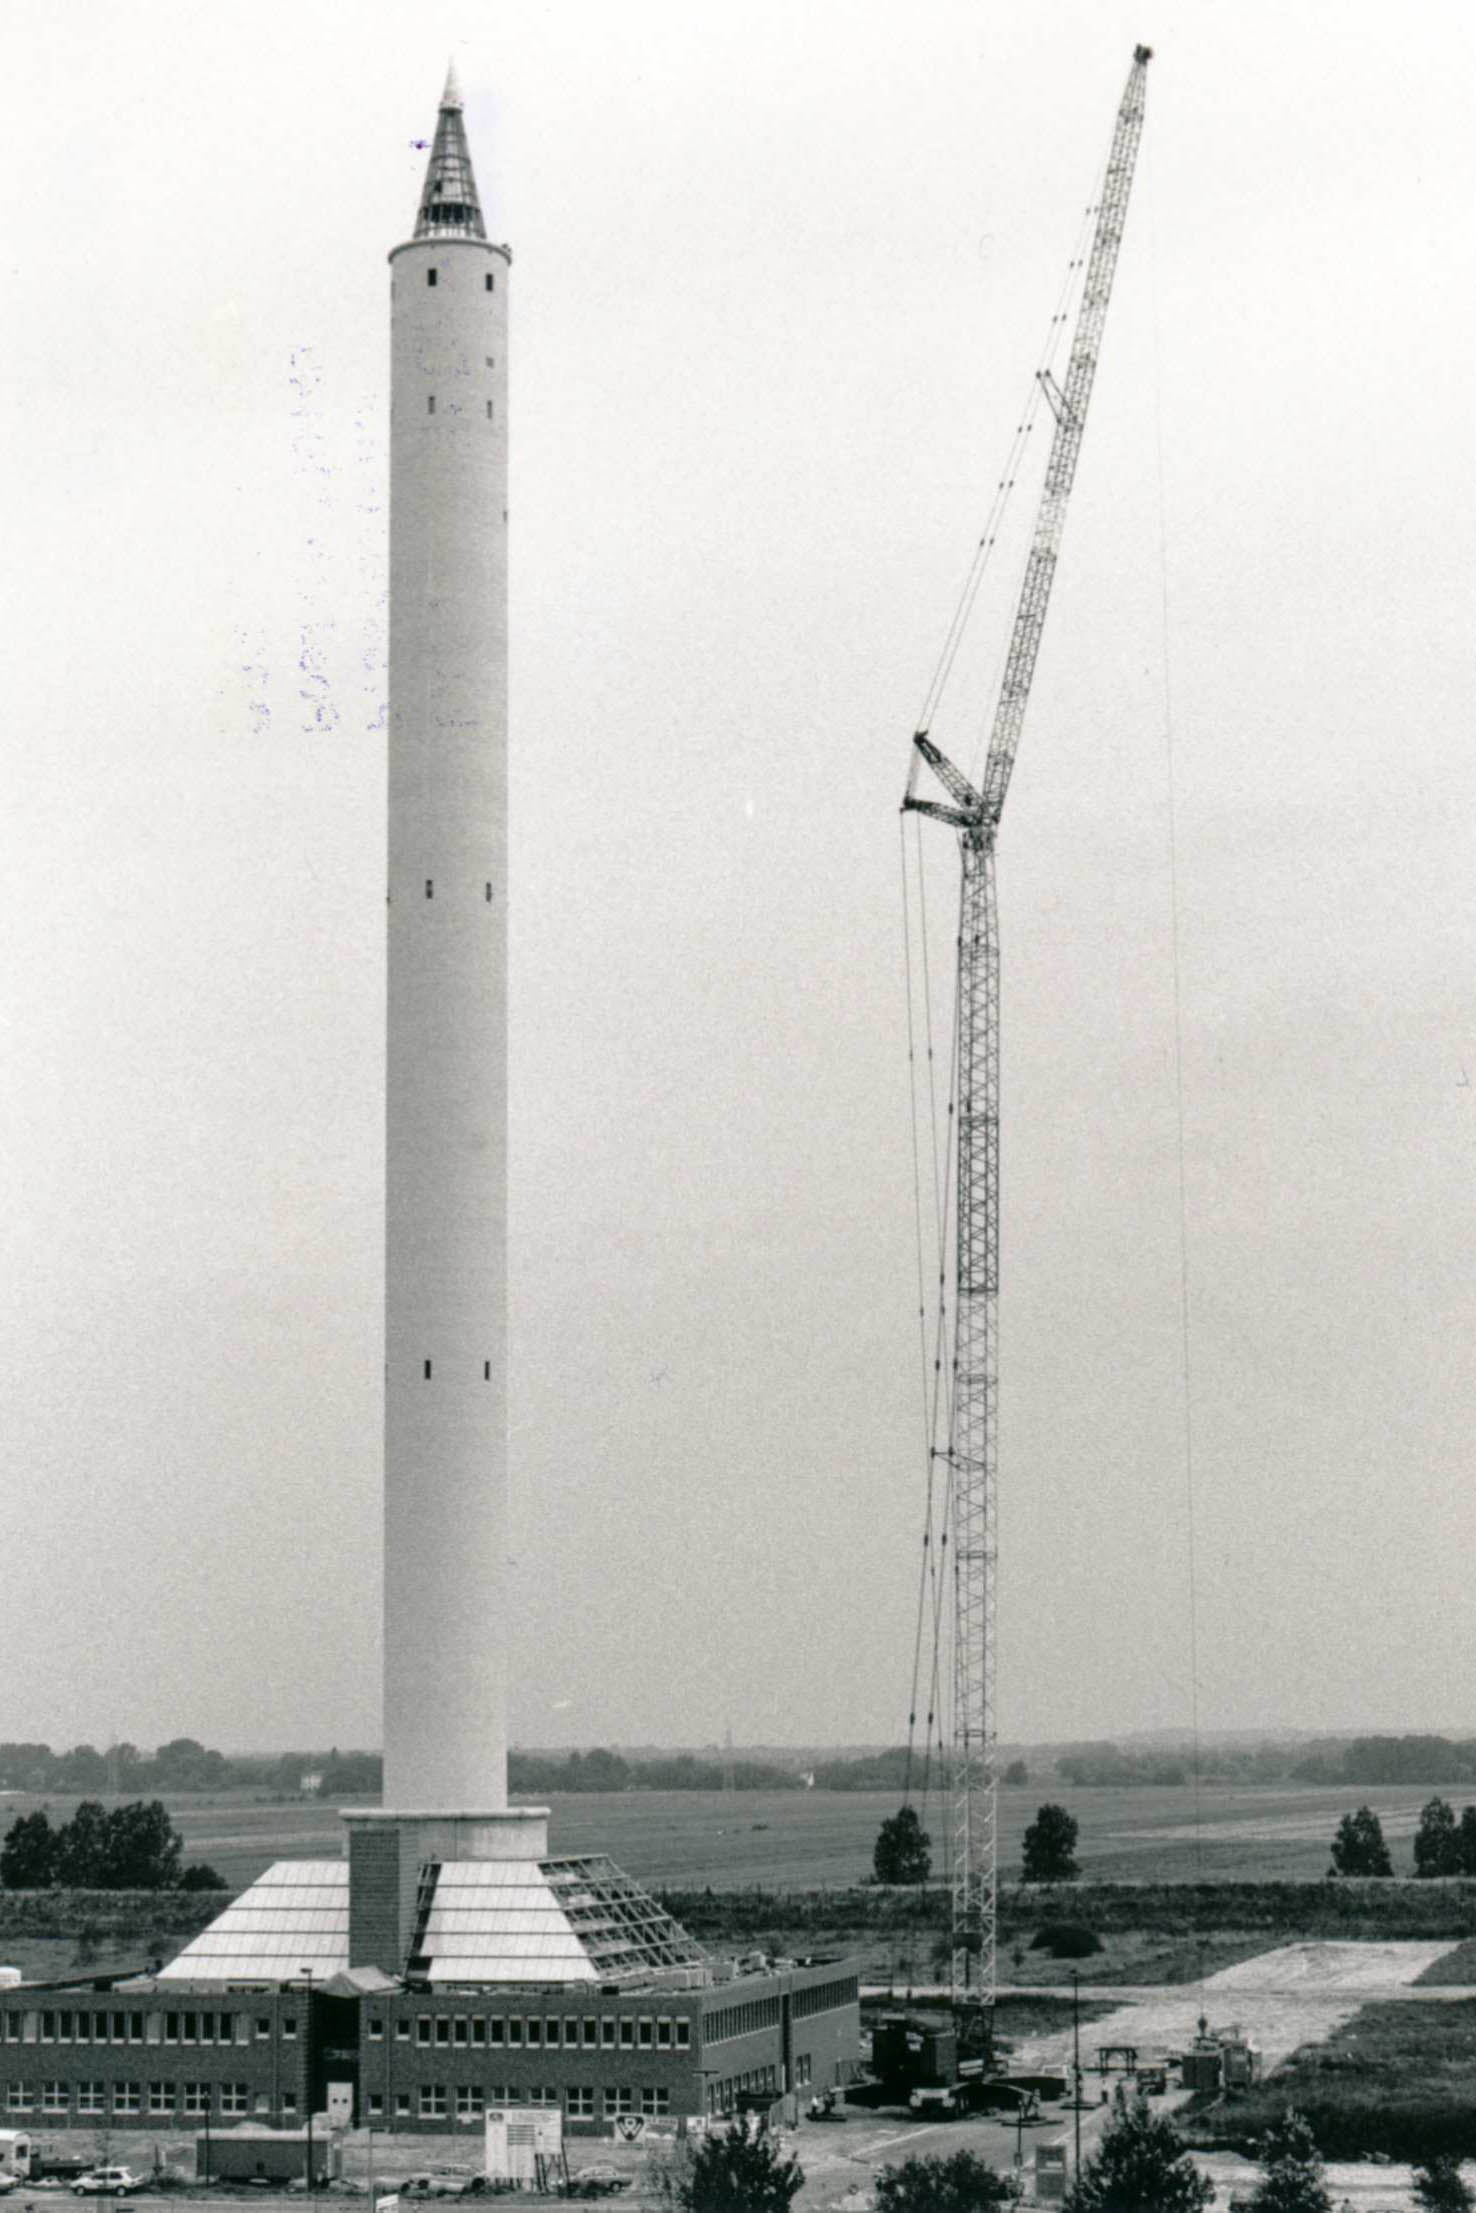 Vier Fotos zeigen die schrittweise Montage der kegelförmigen Spitze auf dem Fallturm im August 1989.